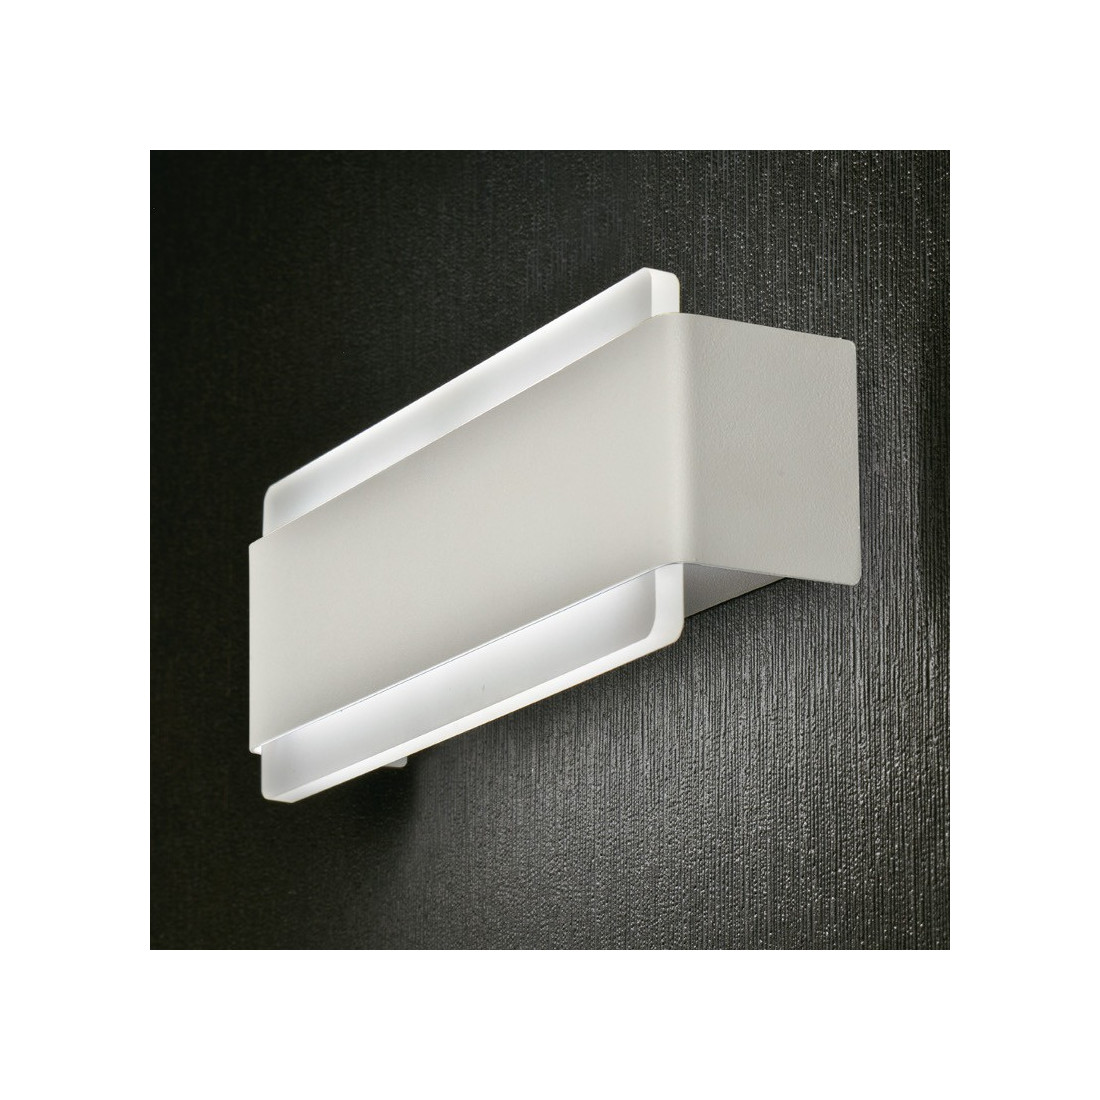 Applique PG-VENERE L9235 LED 12W modulo metallo bianco biemissione lampada parete moderna interno